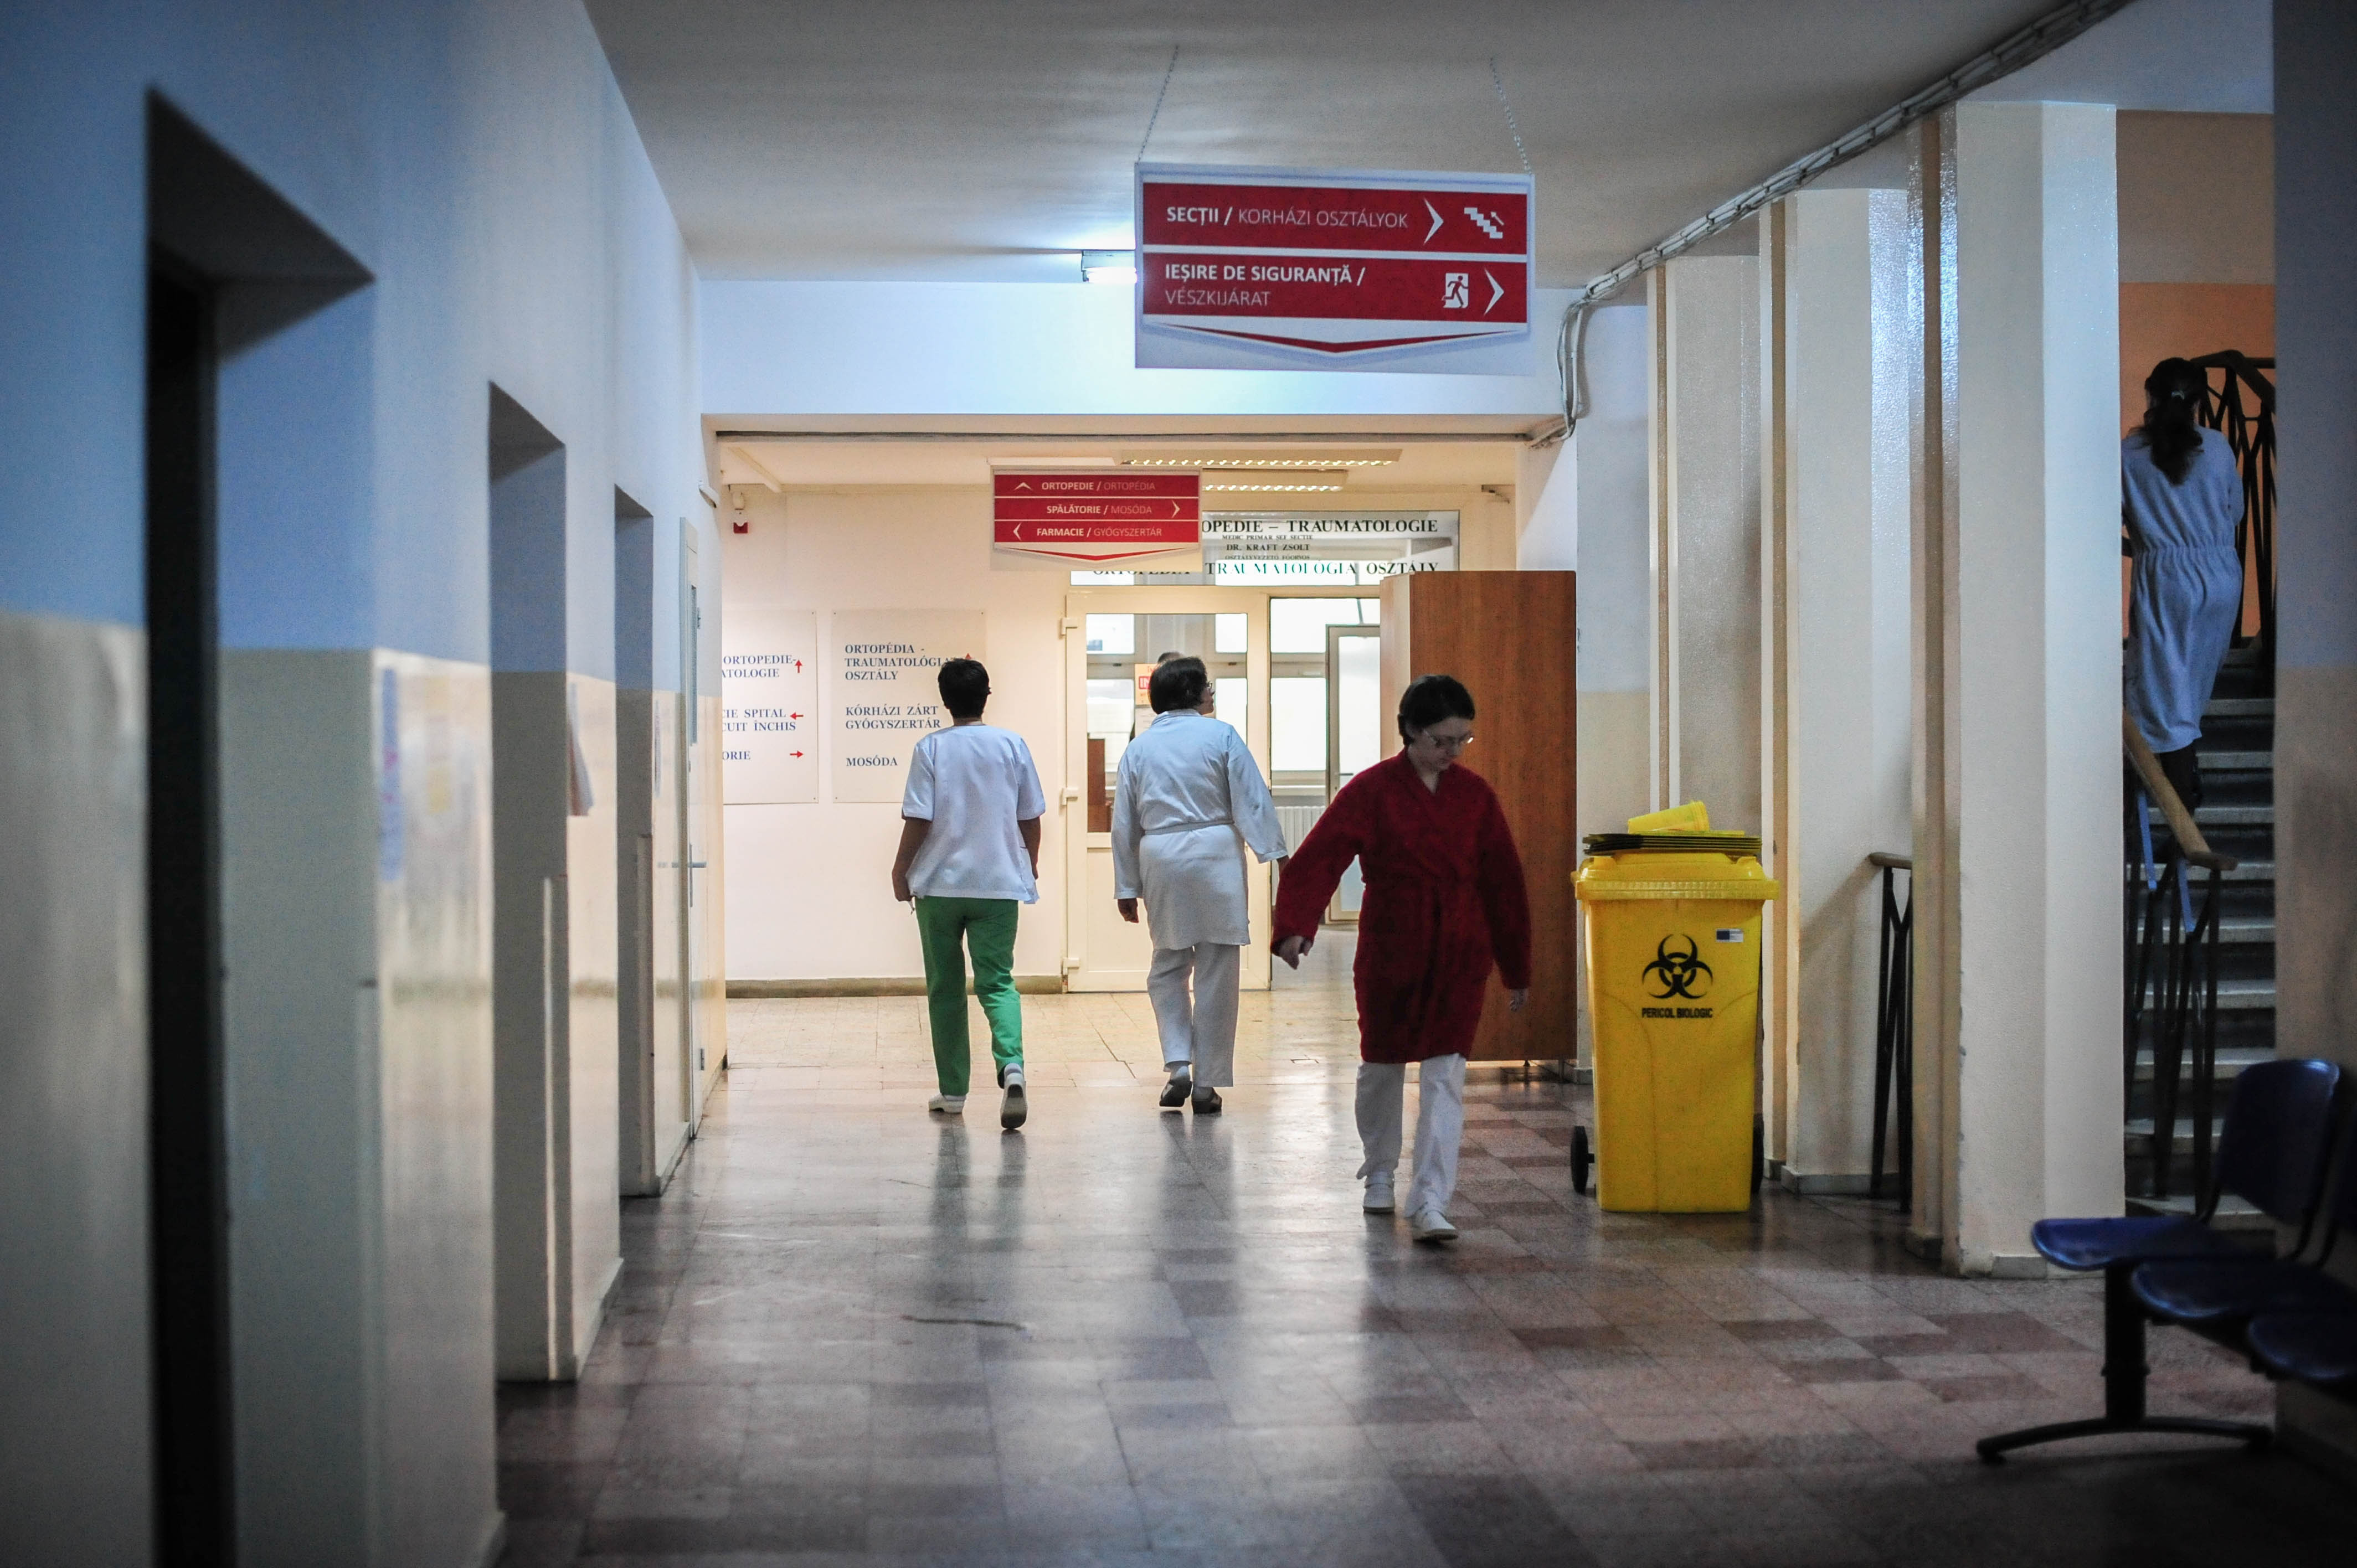 Fokozott elővigyázatosságra intenek a kórházi vezetők